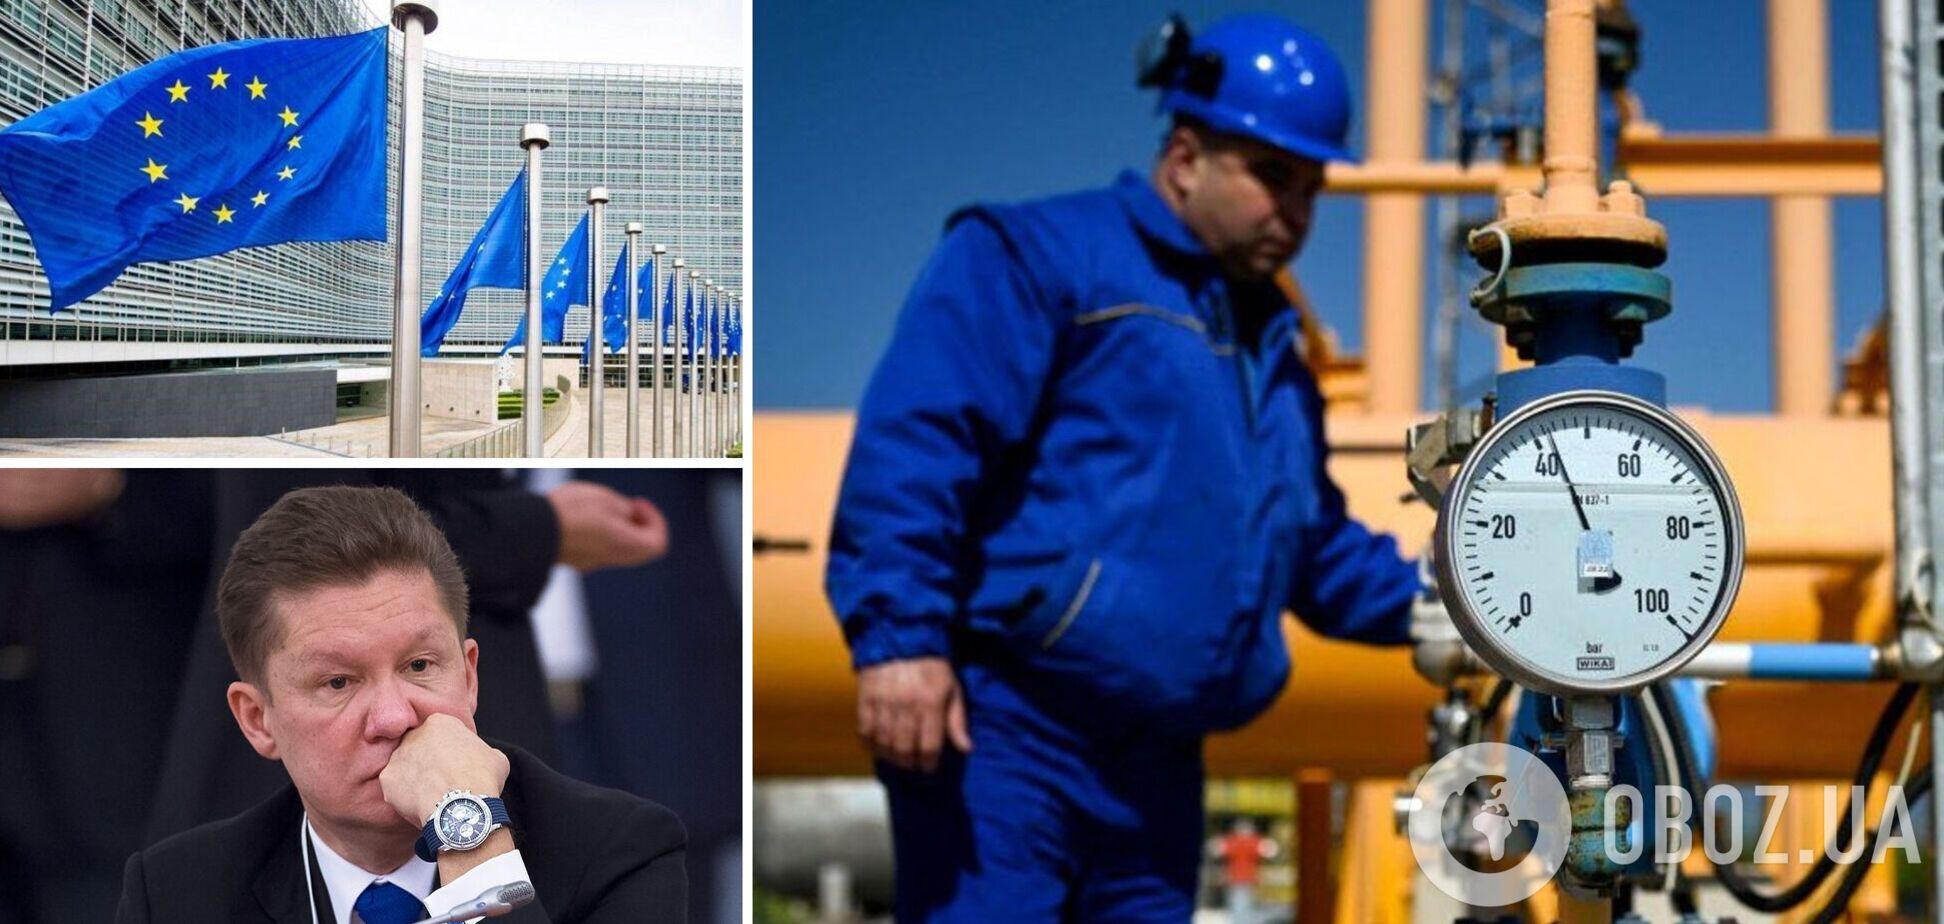 Миллер заявил, что 'Газпром' прекратит поставки газа в ЕС в случае ограничения цена на топливо